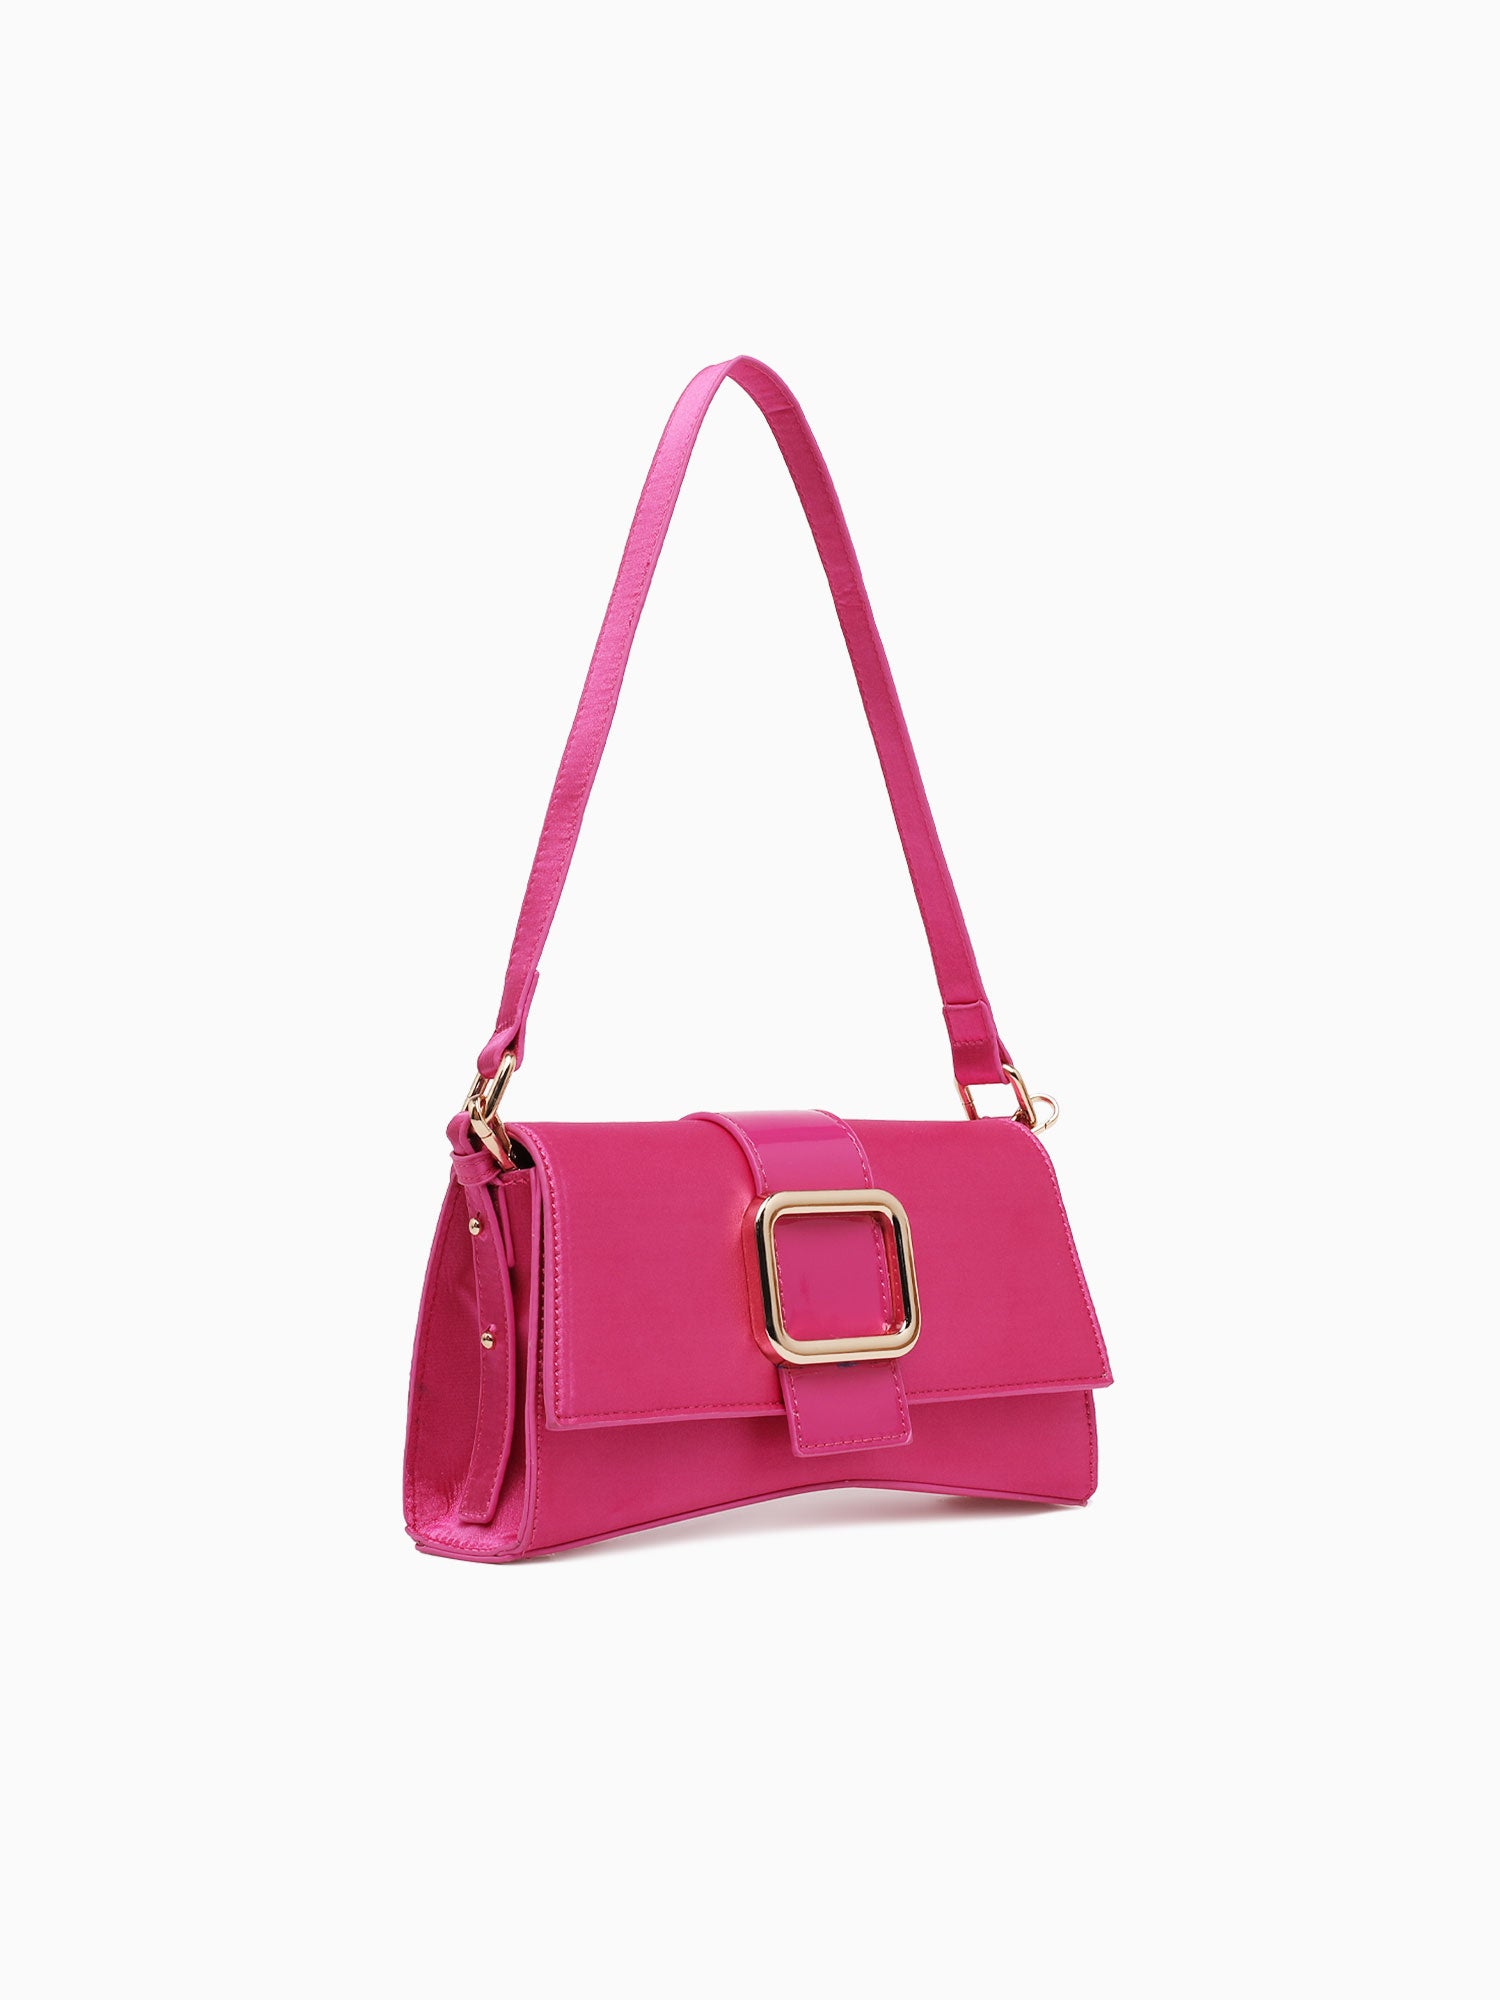 Buckle Shoulder Bag Pink Pink